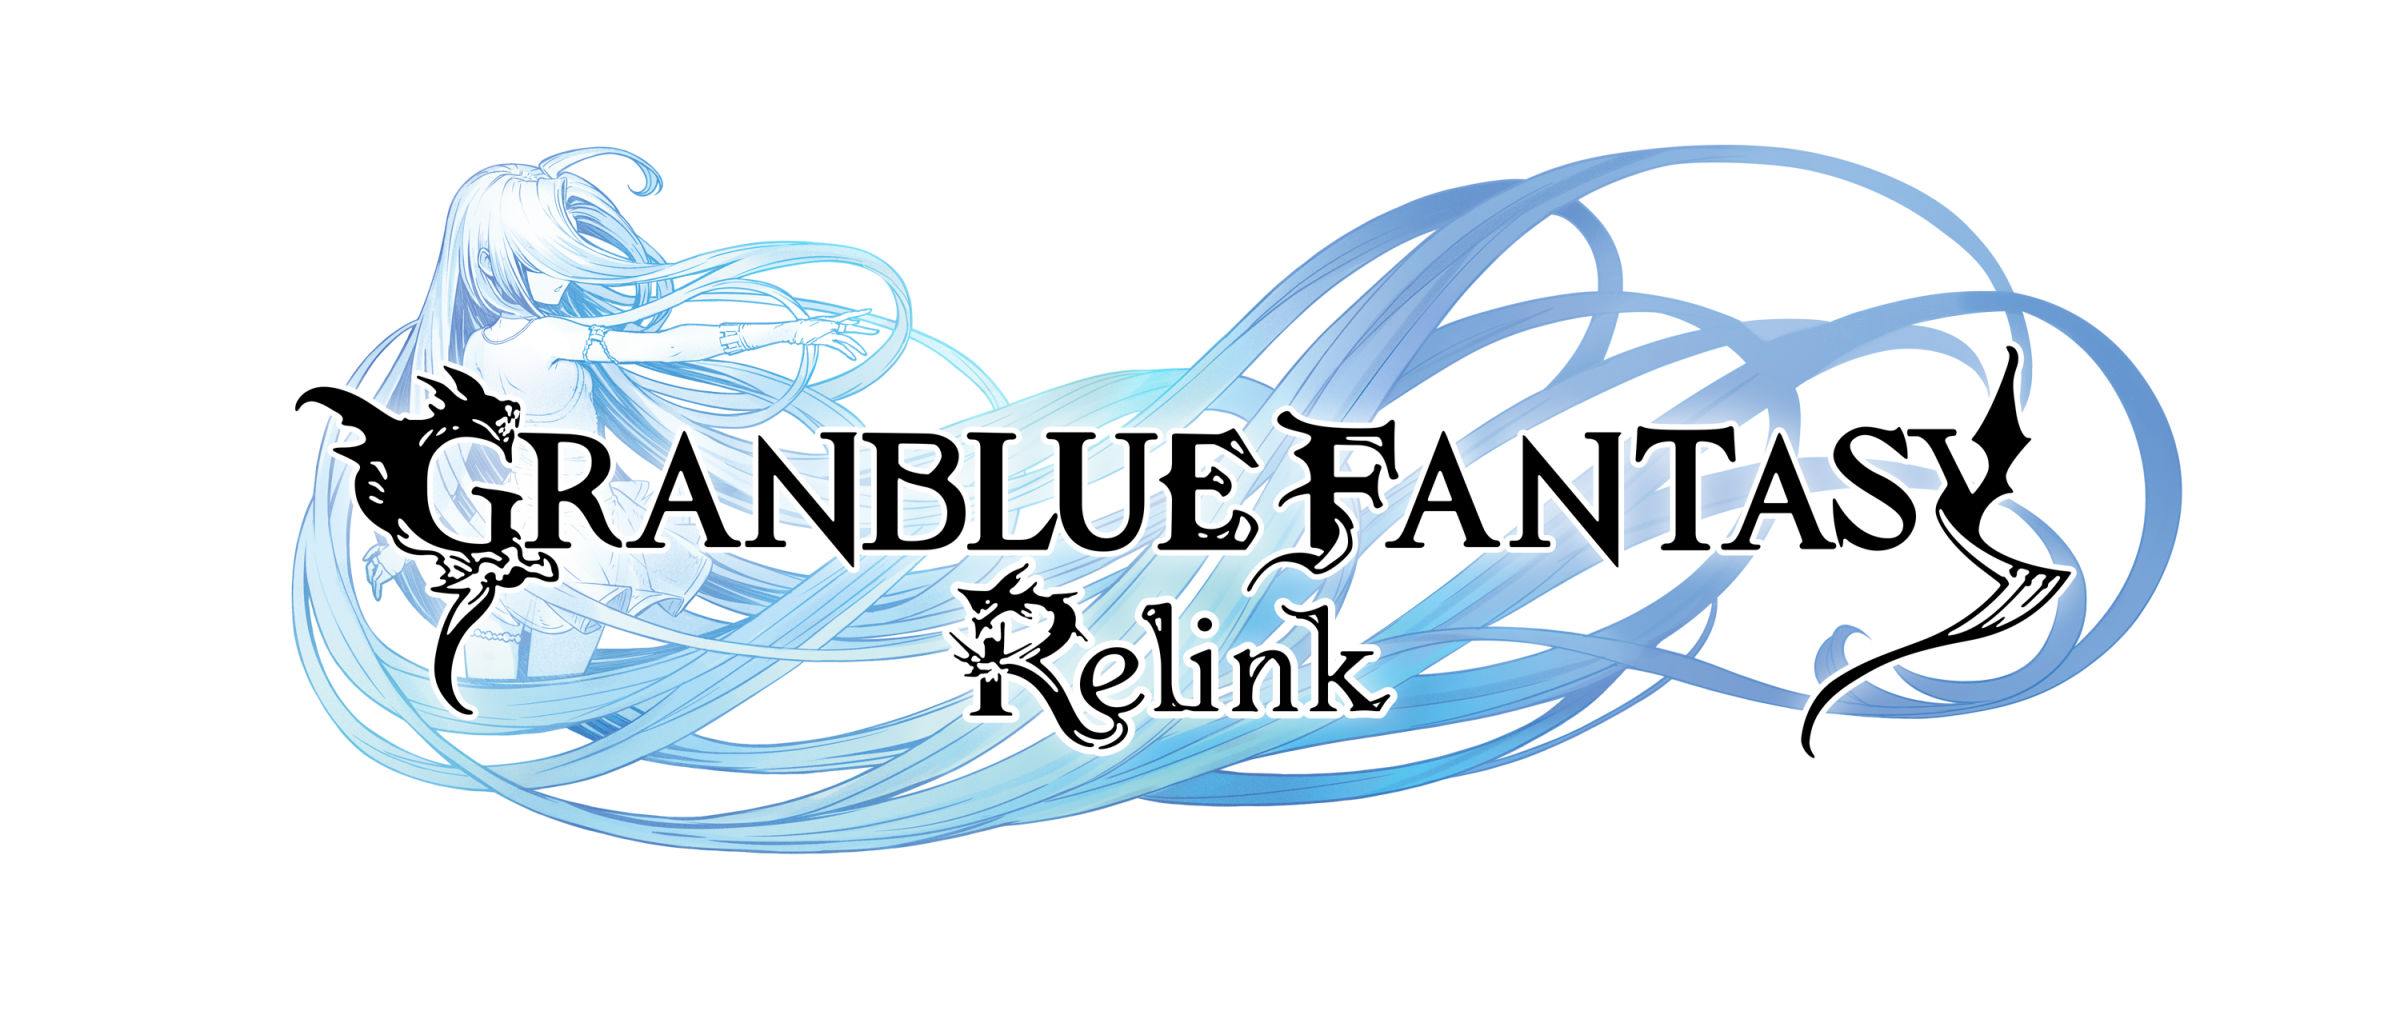 《Granblue Fantasy: Relink》 冒险舞台、星晶兽、初期角色介绍